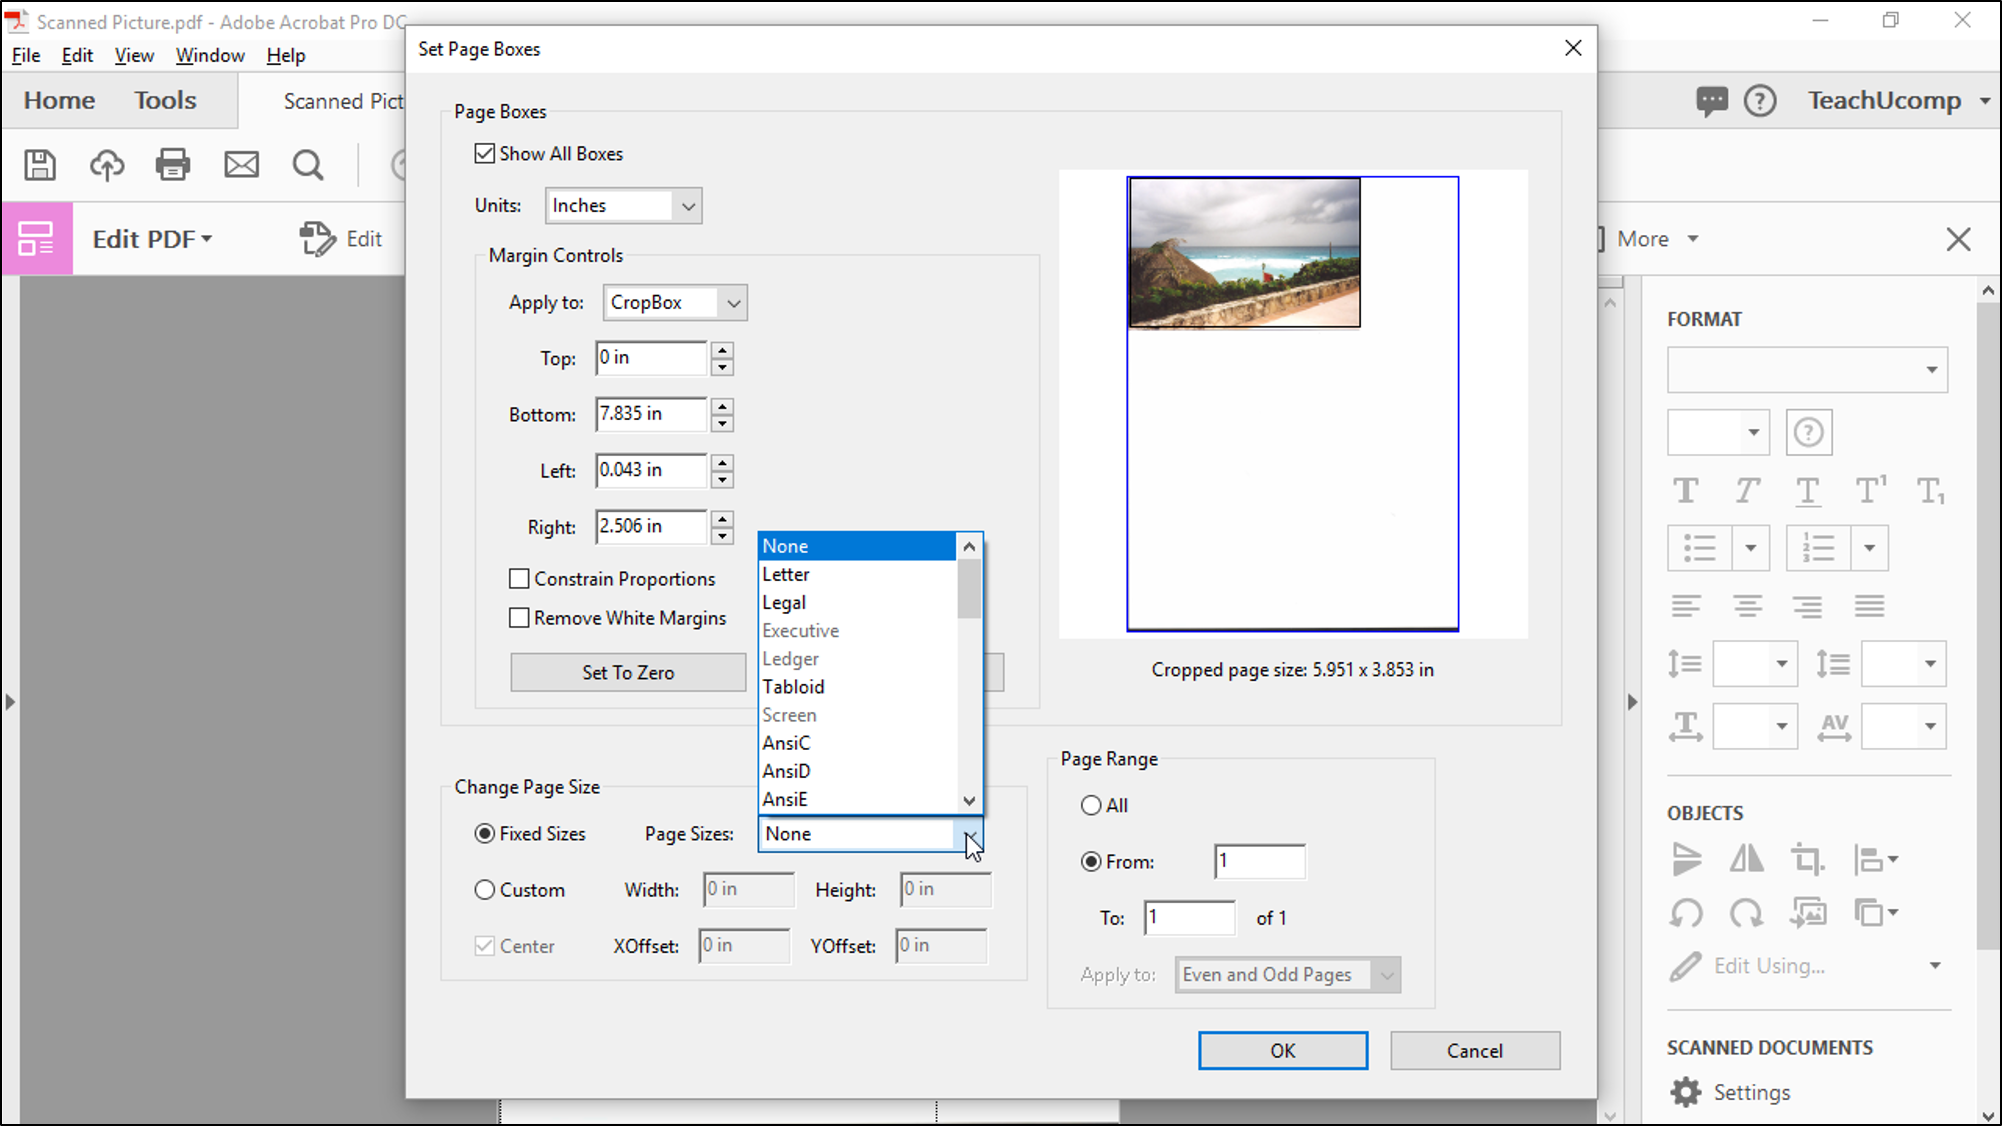 how to insert signature in pdf windows adobe acrobat